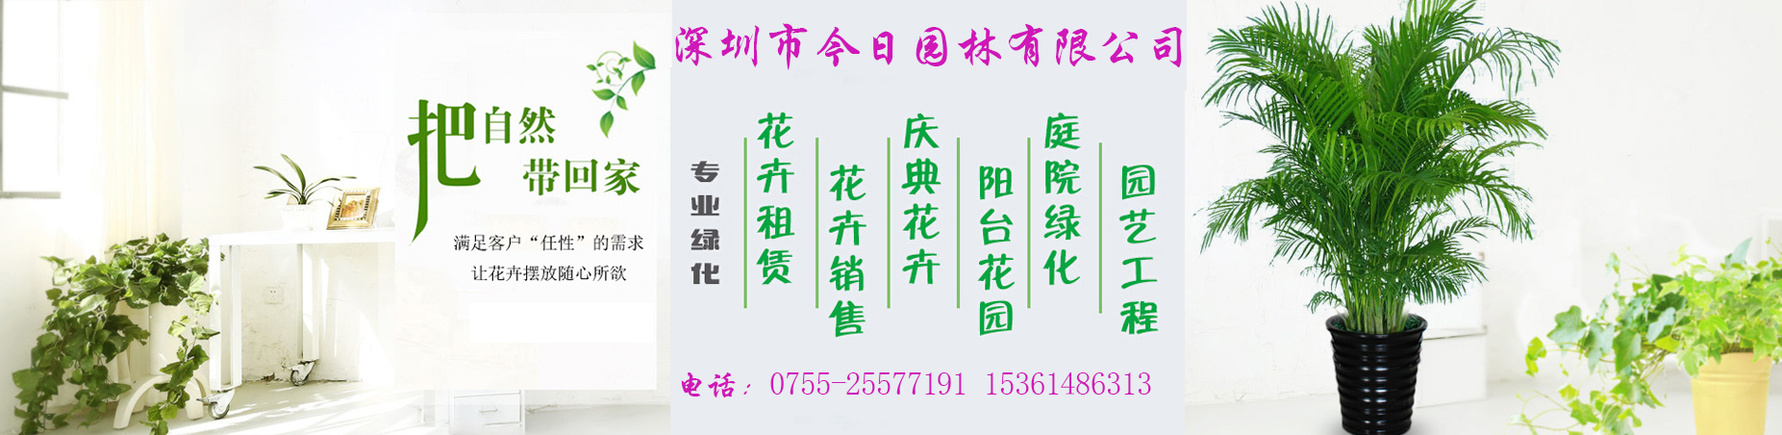 綠植租賃，找深圳市今日園林有限公司，電話：15361486313